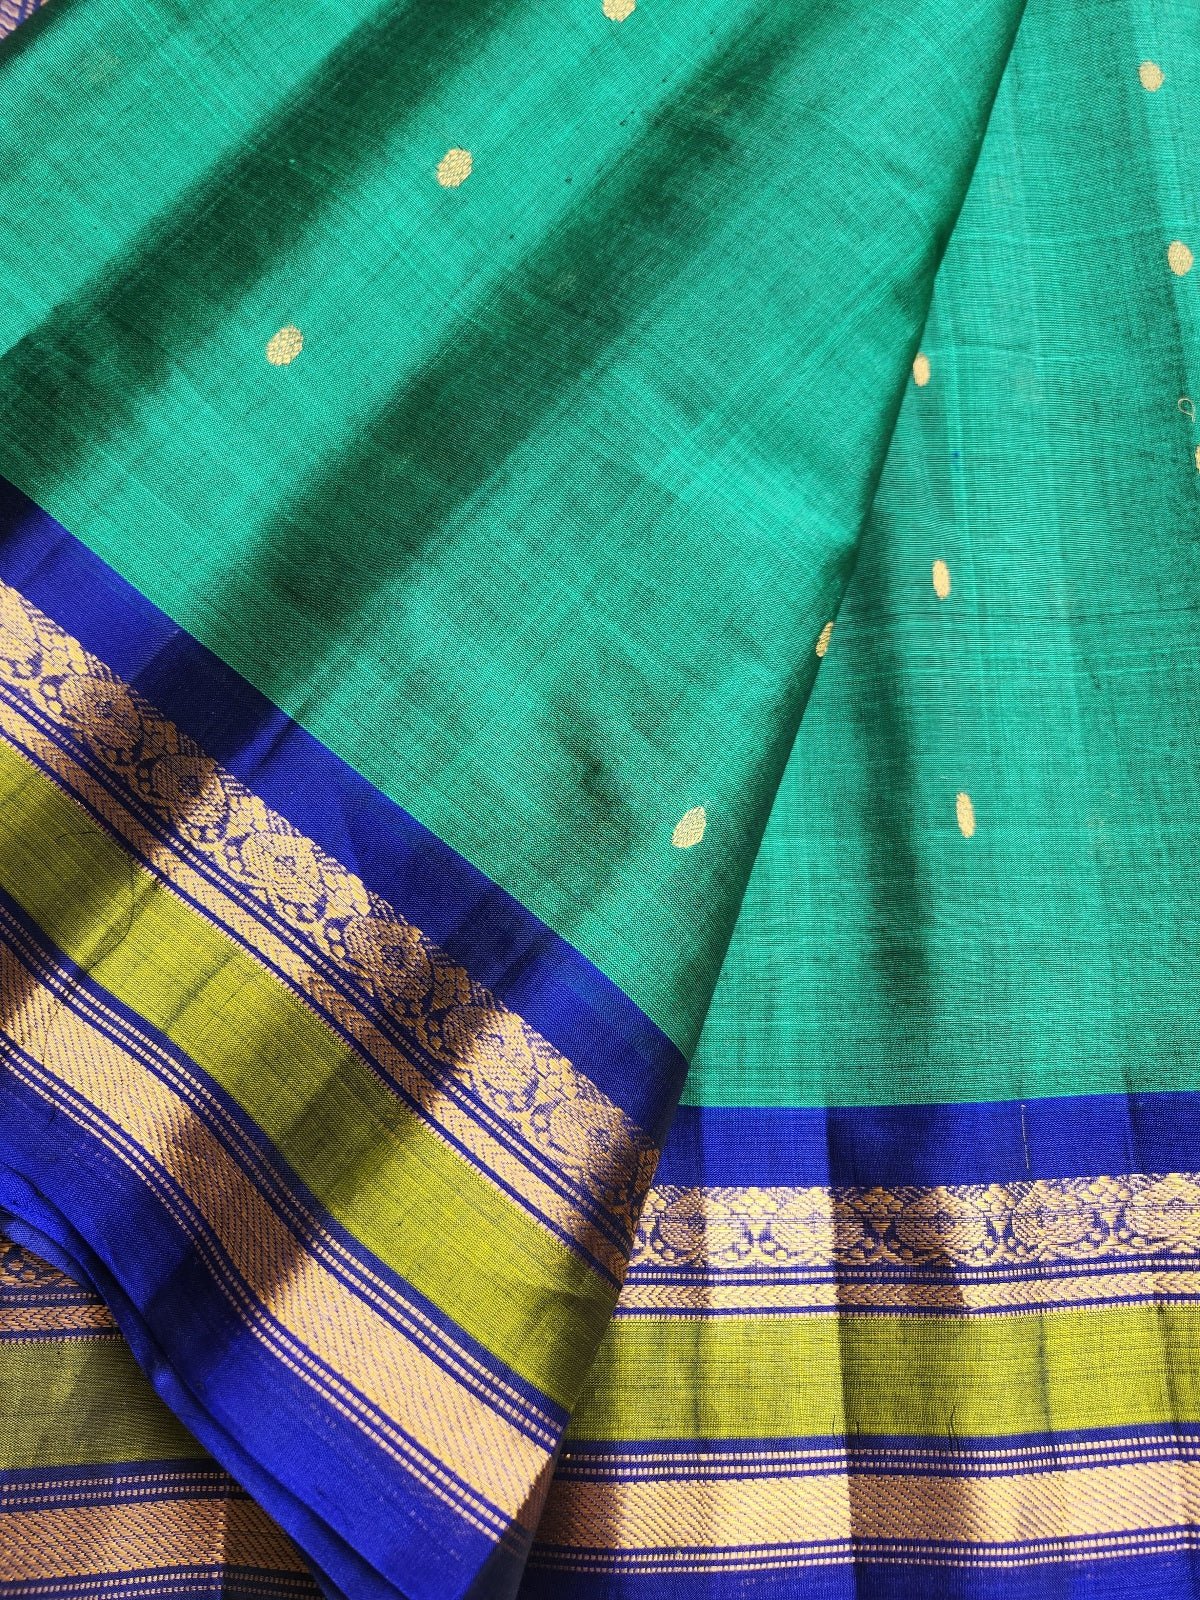 gadwal saree handloom saree Blue saree wedding shopping SICO saree Peacock colors saree 